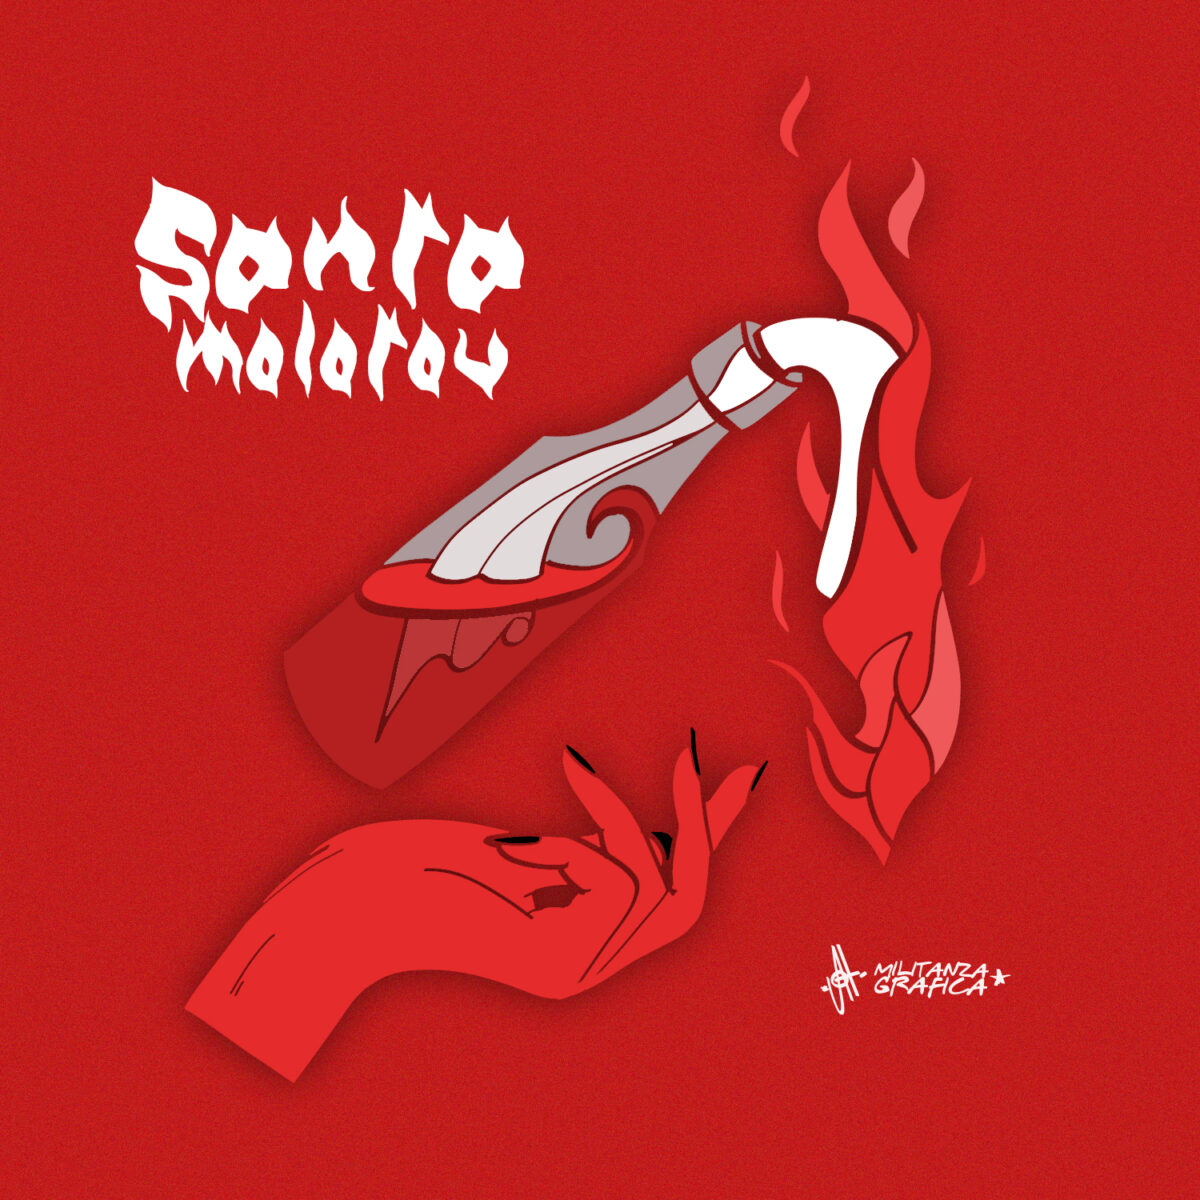 Santa Molotov